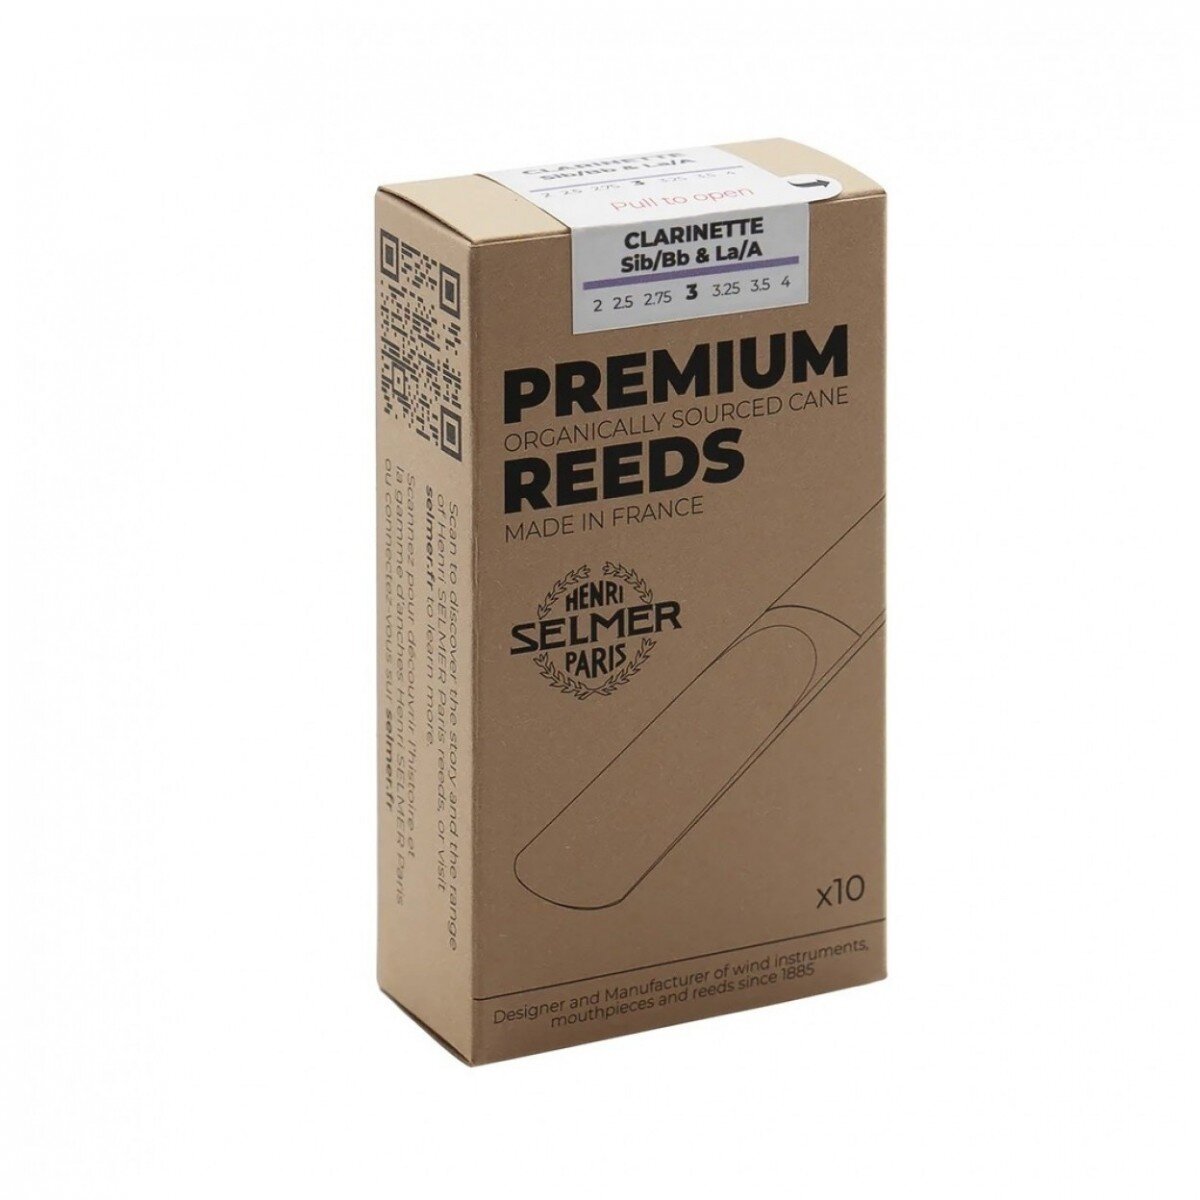 Selmer Clarinet Premium 4 : photo 1